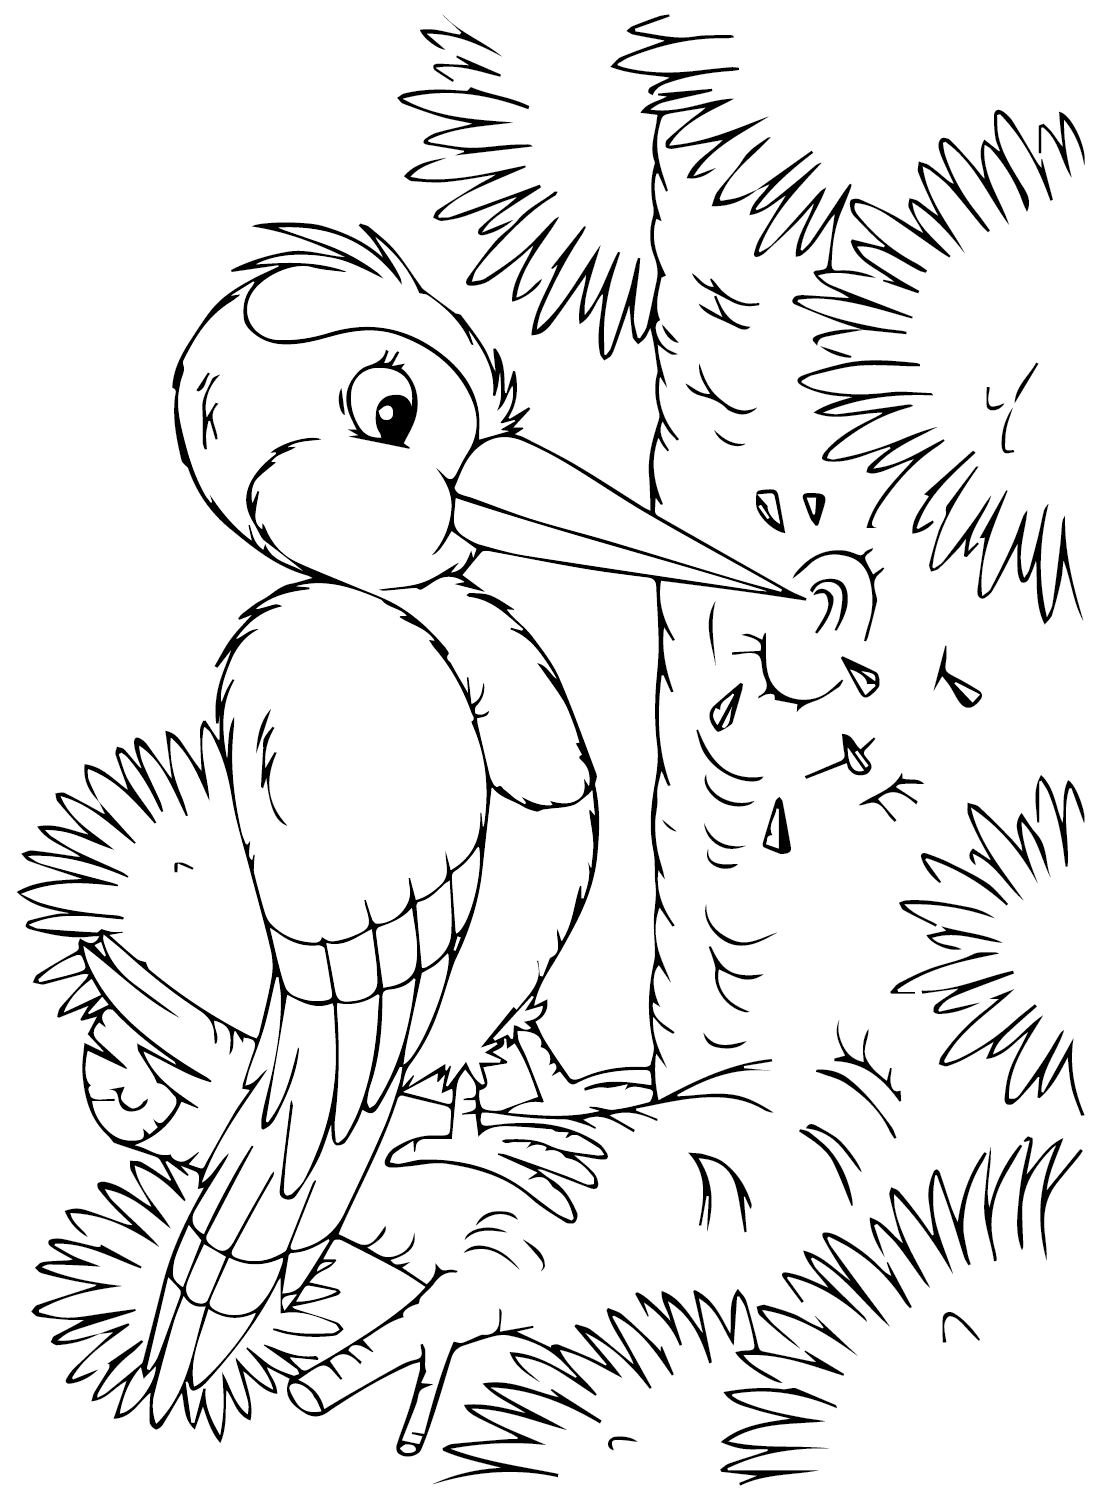 Página para colorir do pica-pau grátis no pica-pau